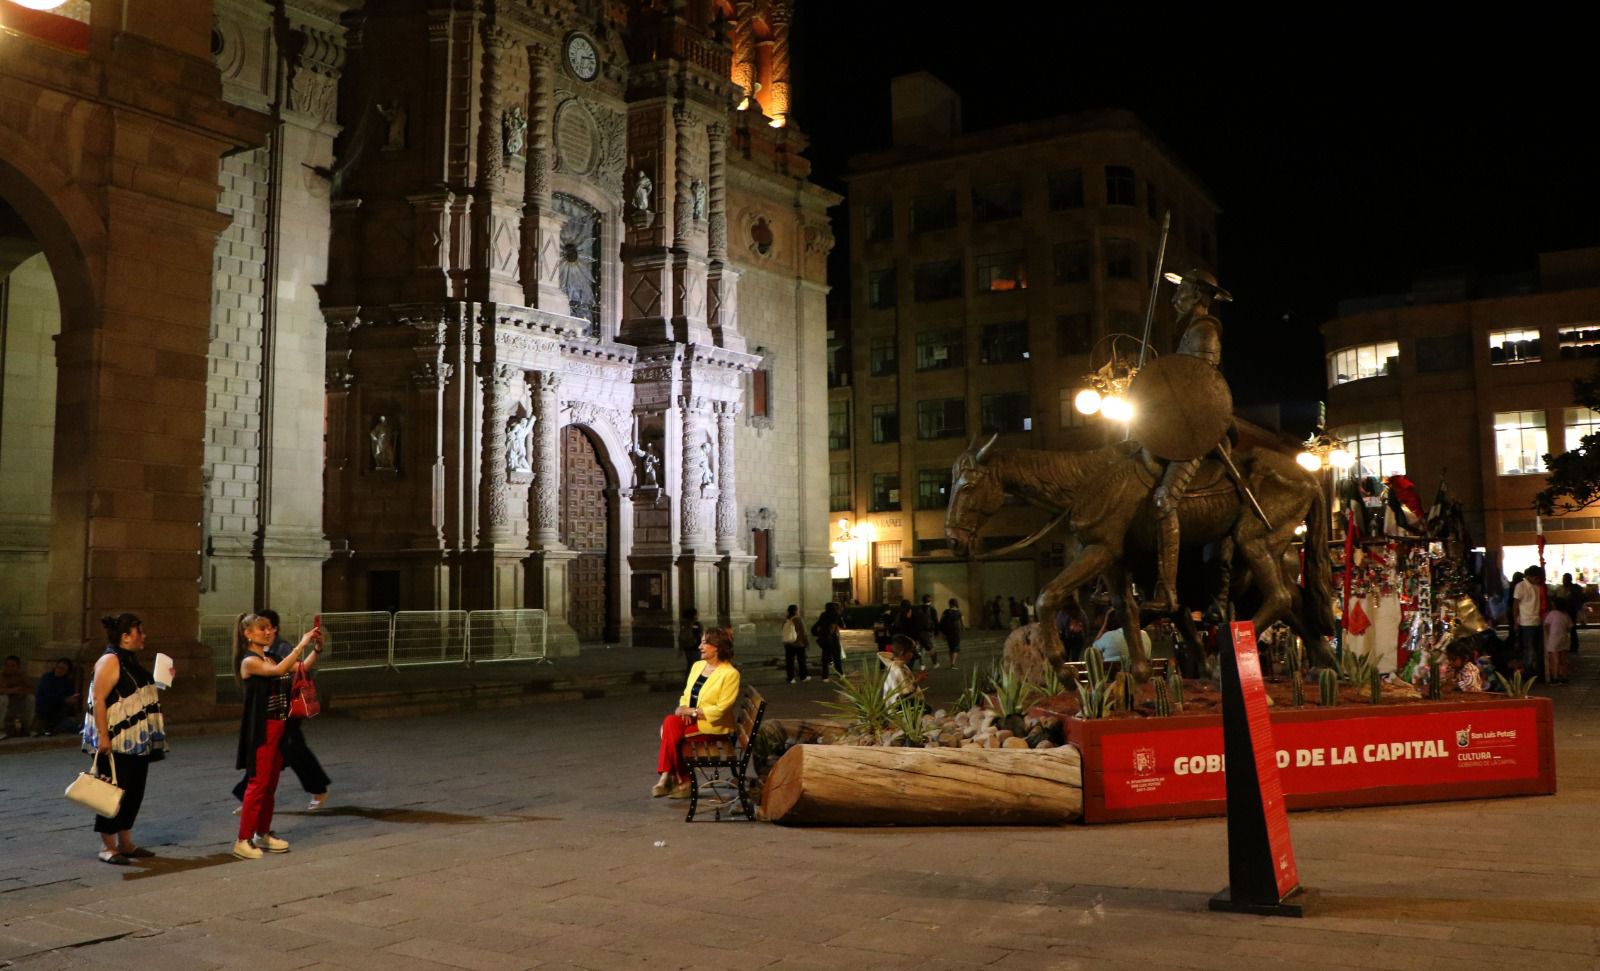 Gran expectación sigue provocando la escultura “Don Quijote y Sancho” en Plaza de Armas